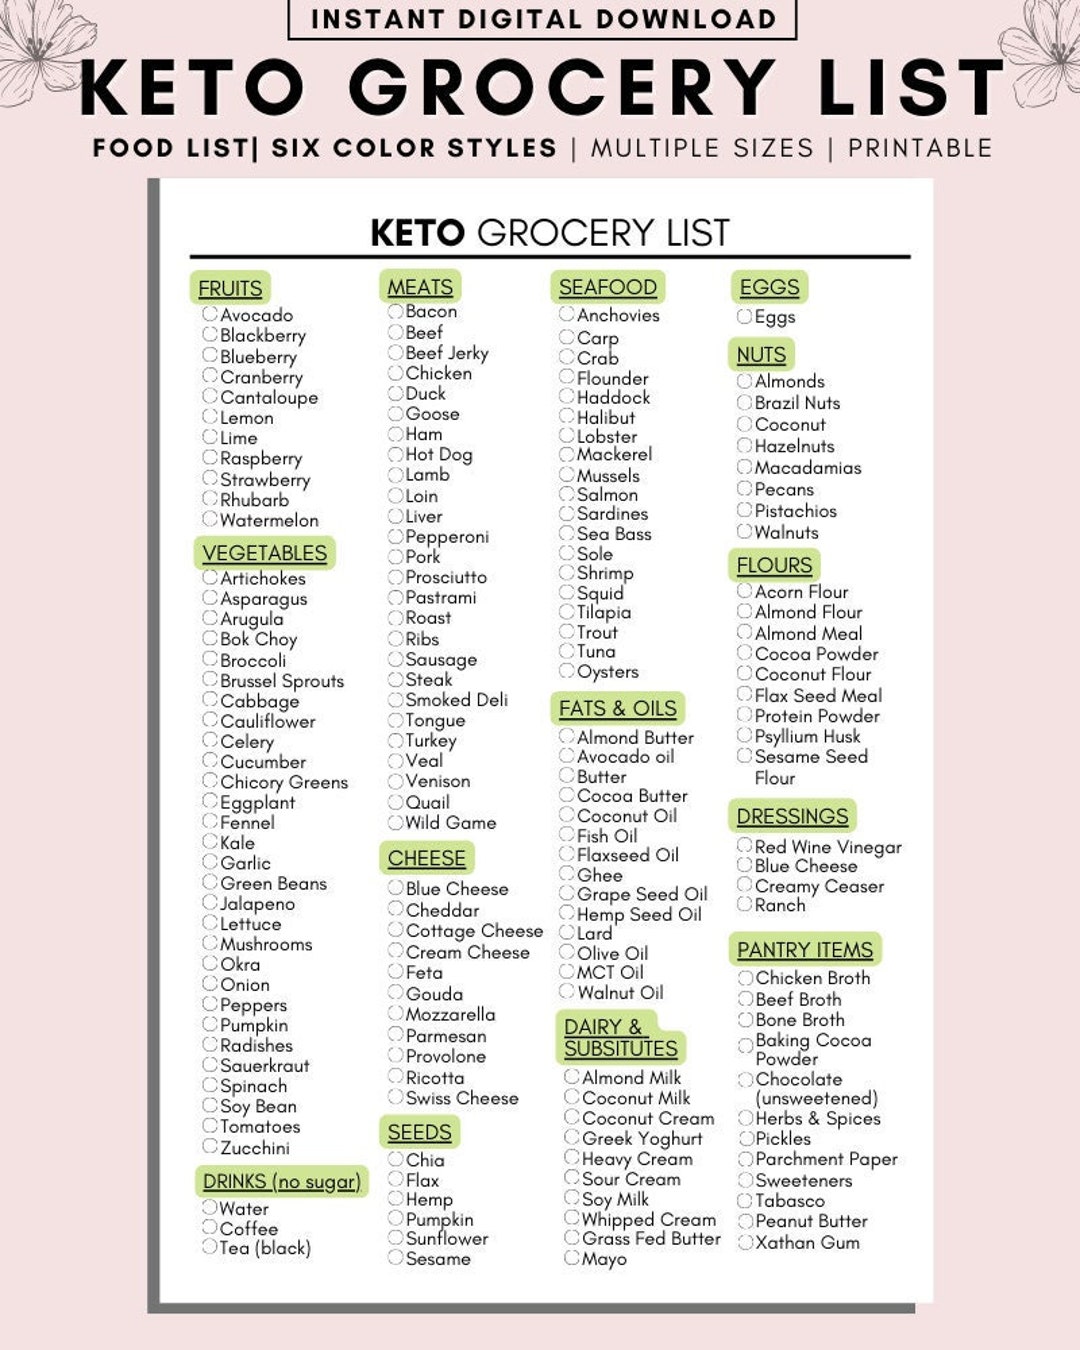 Keto Grocery List Printable, Keto Food List, Low Carb Food List, Keto ...